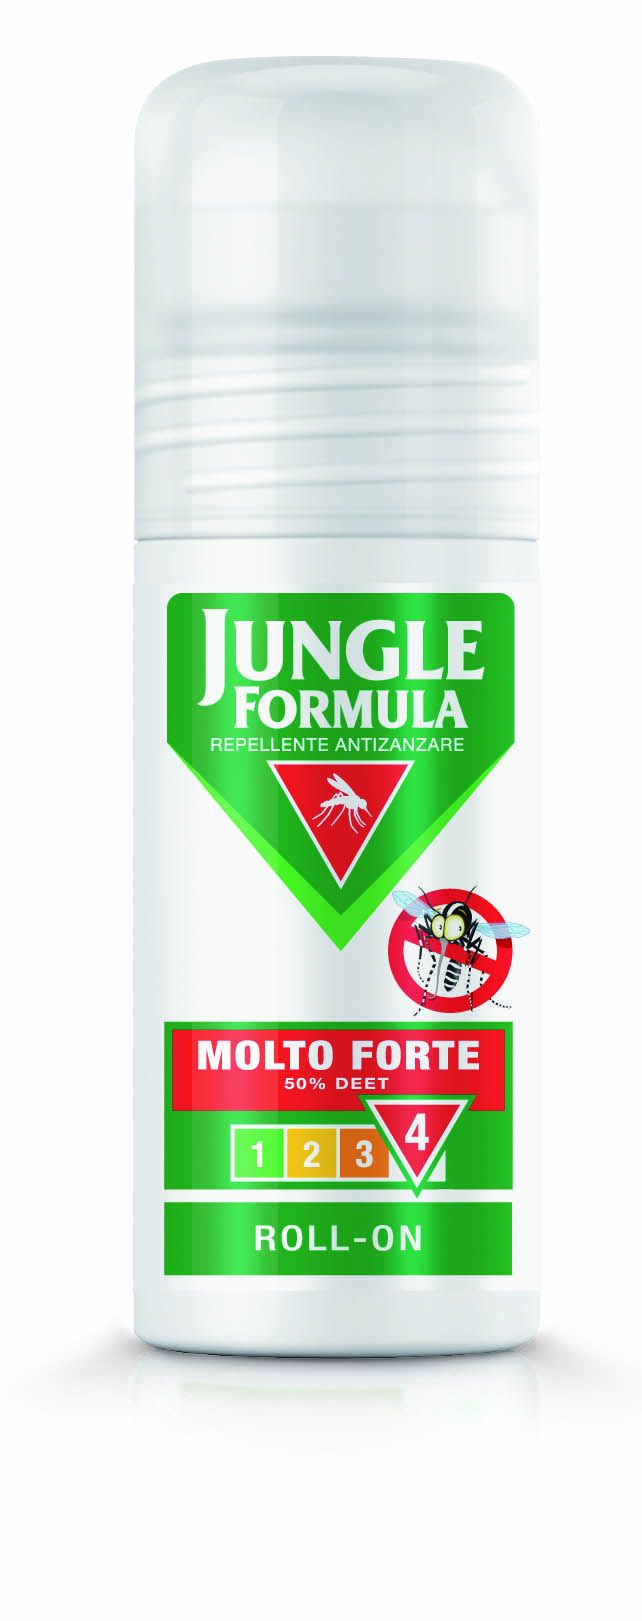 Jungle Formula prodotti e offerte - Top Farmacia